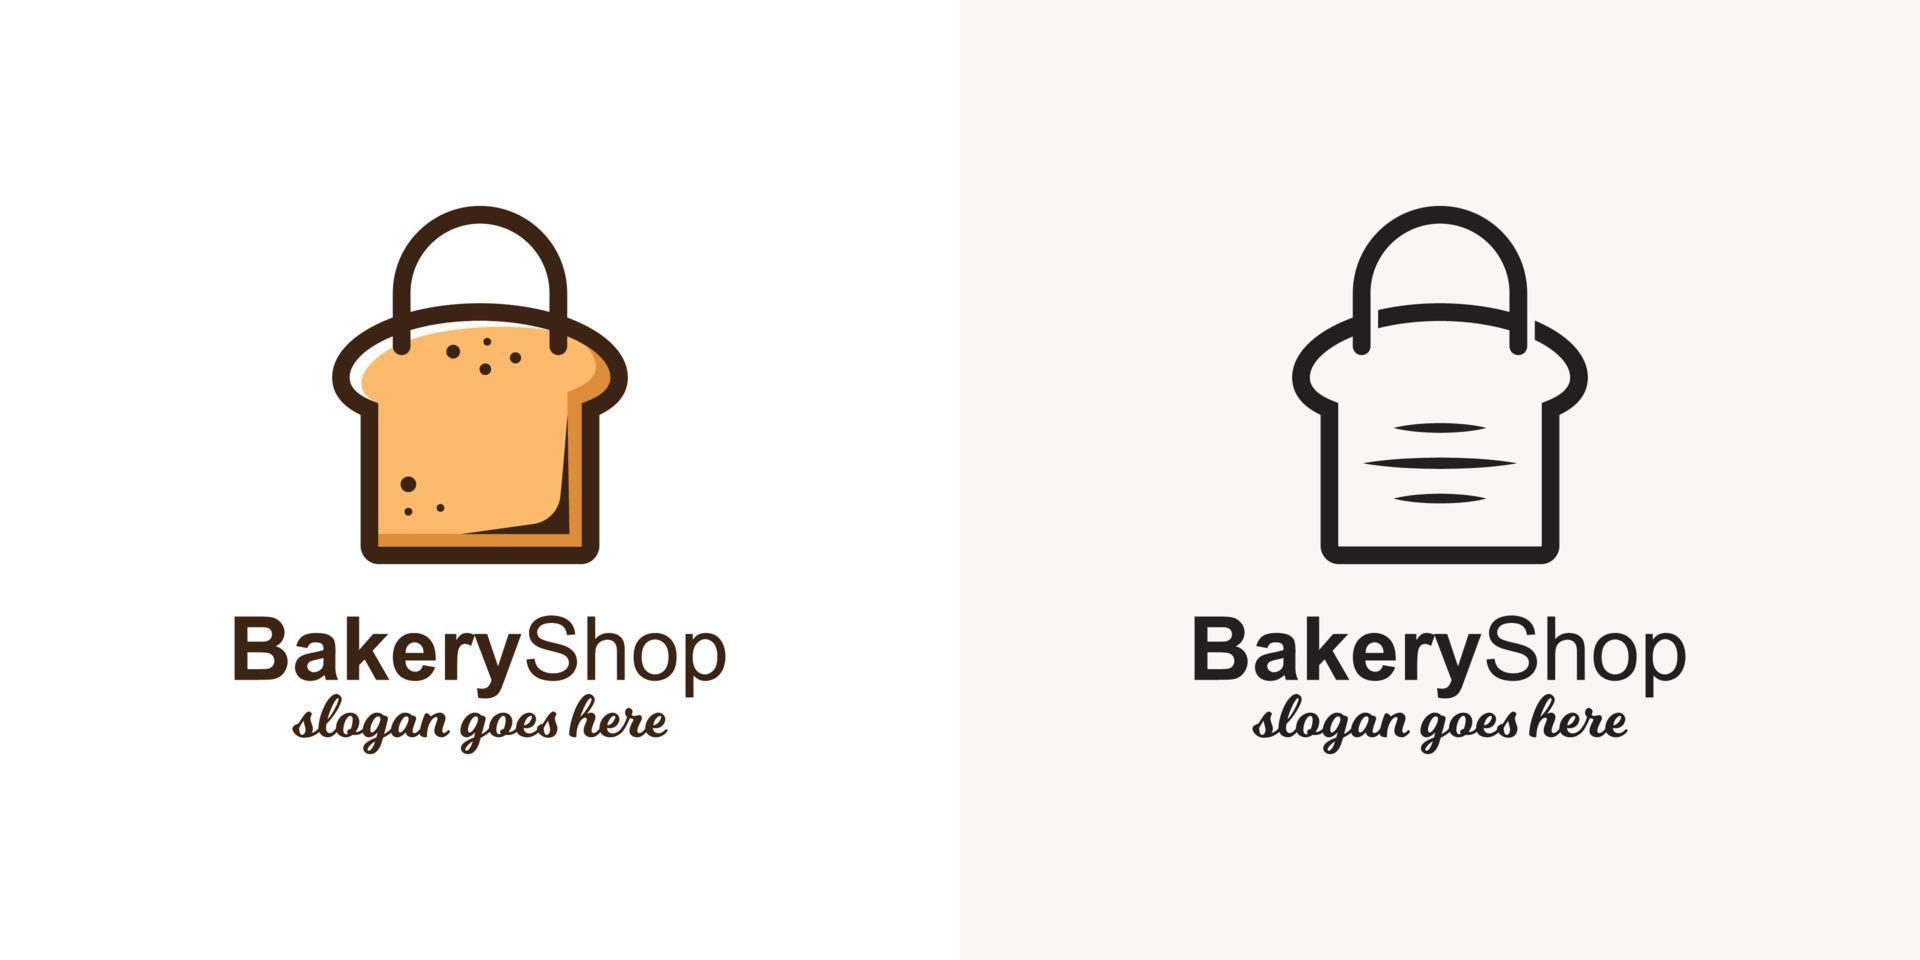 toastbrood met zak voor logosjabloon voor bakkerijwinkels met line art-versies vector